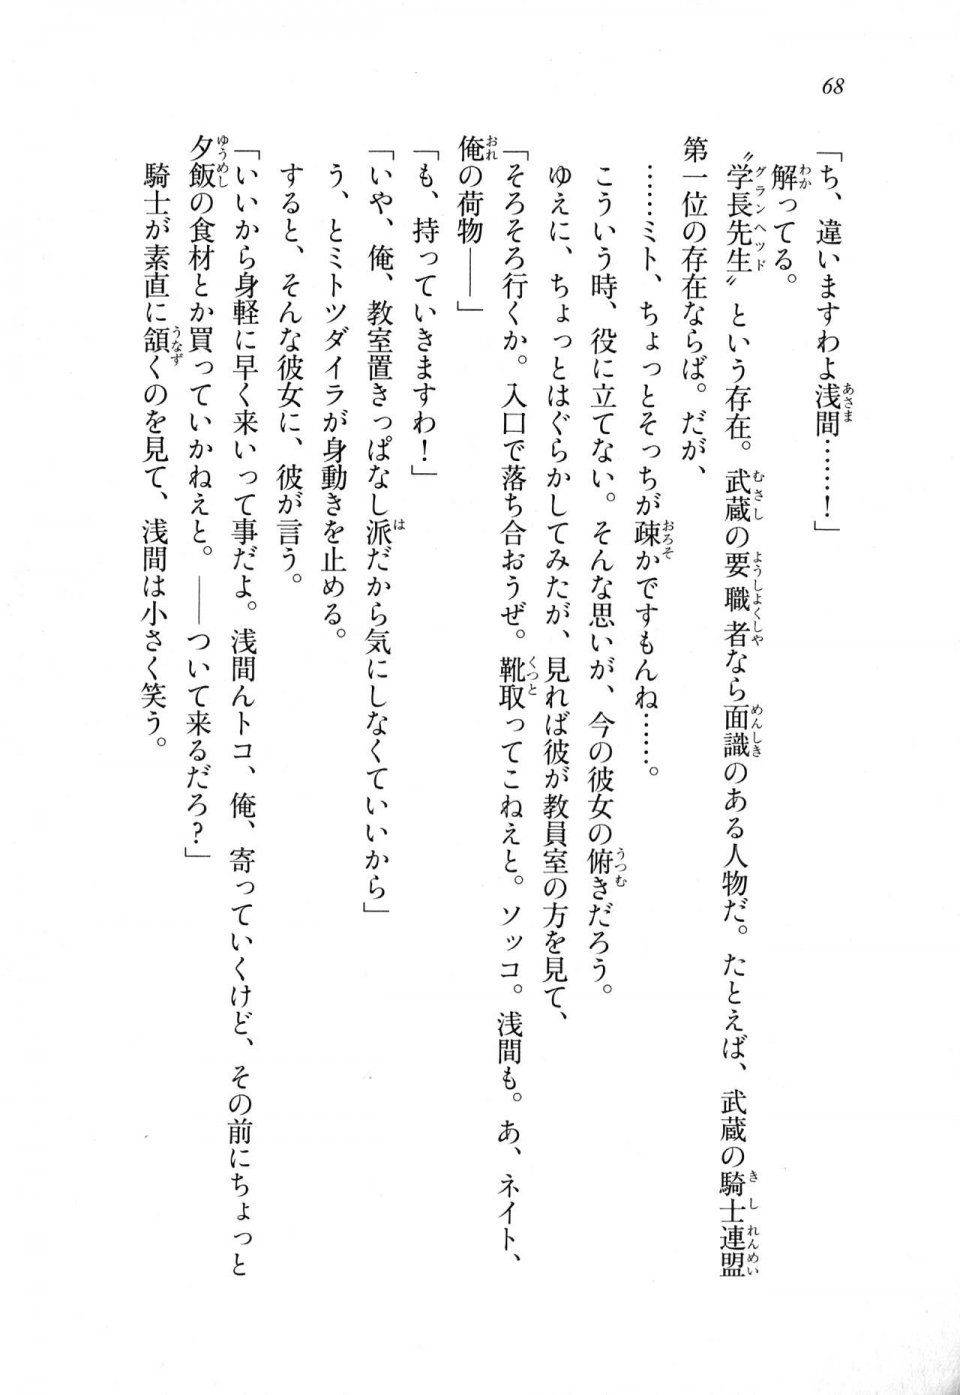 Kyoukai Senjou no Horizon LN Sidestory Vol 1 - Photo #66